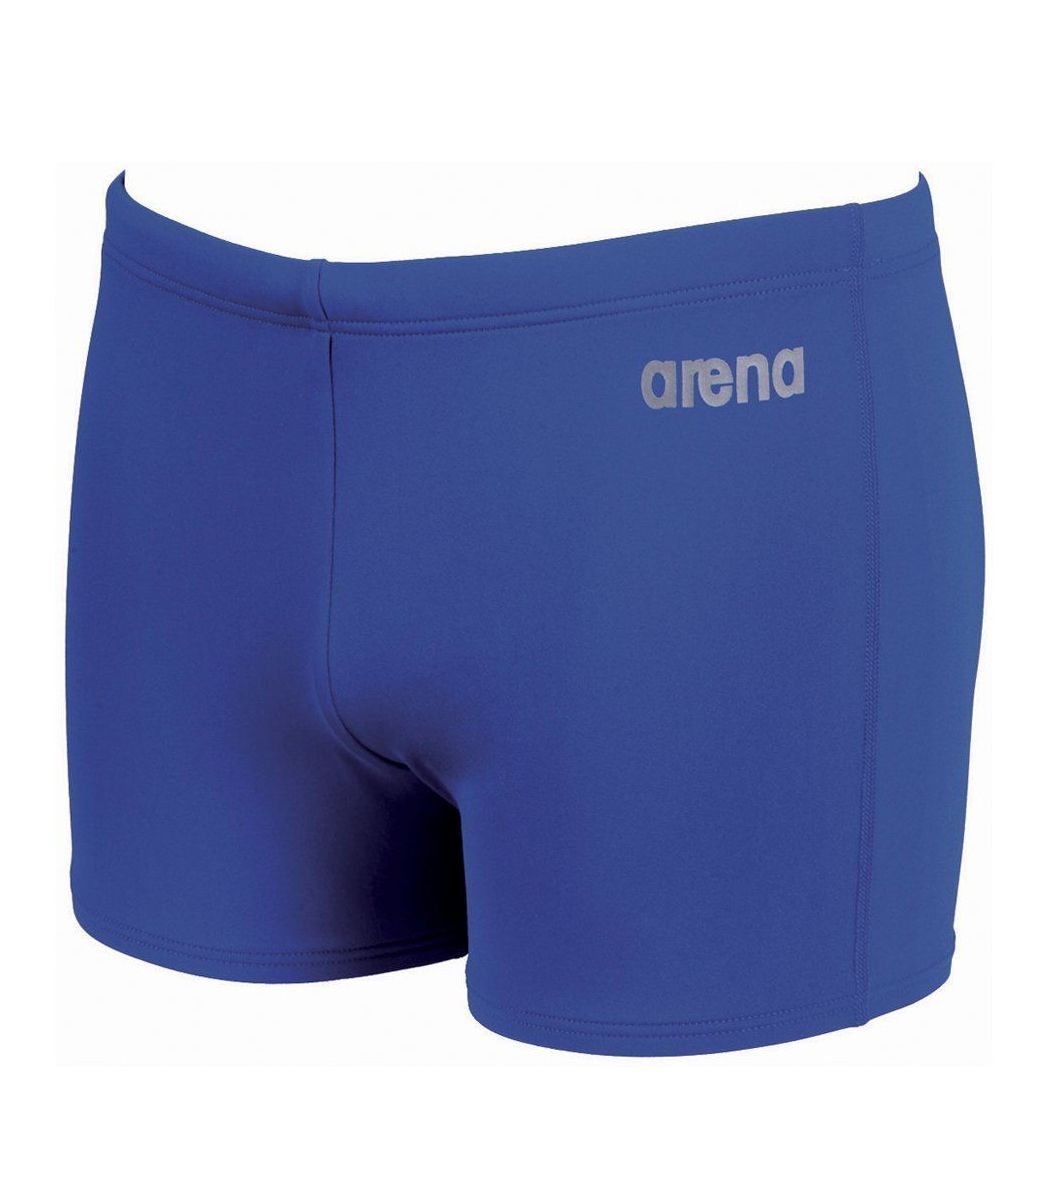  Μαγιό Arena Arena Boy Swimwear Bynars Youth IB 2105972-1